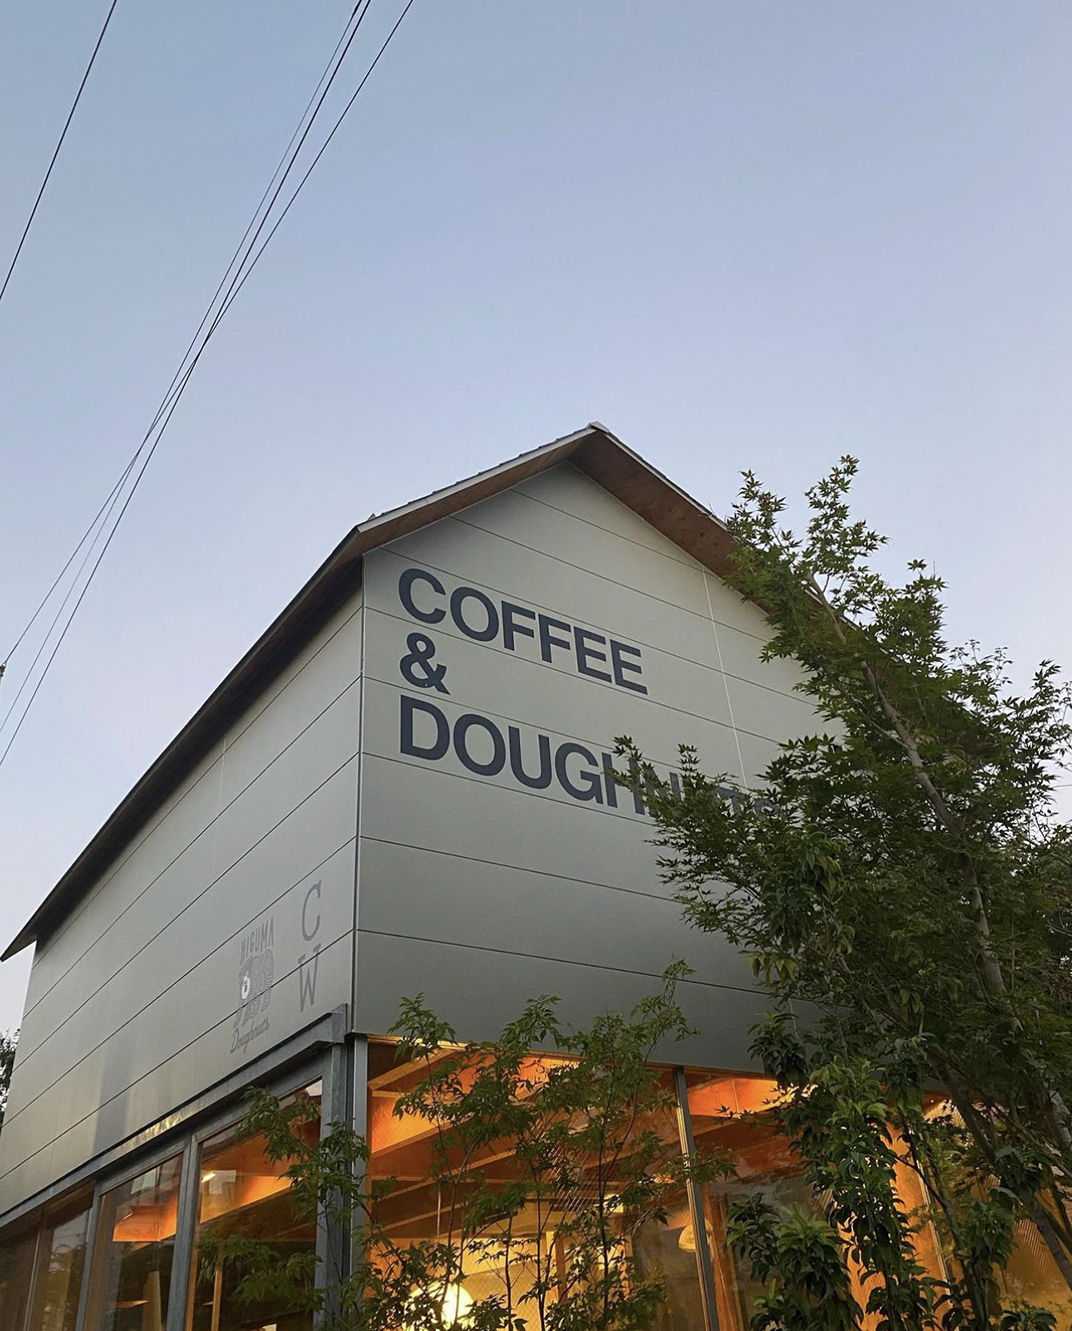 甜甜圈 咖啡店Coffee Wrights和Higuma Doughnuts 日本 上海 深圳 北京 广州 武汉 餐饮商业空间 logo设计 vi设计 空间设计